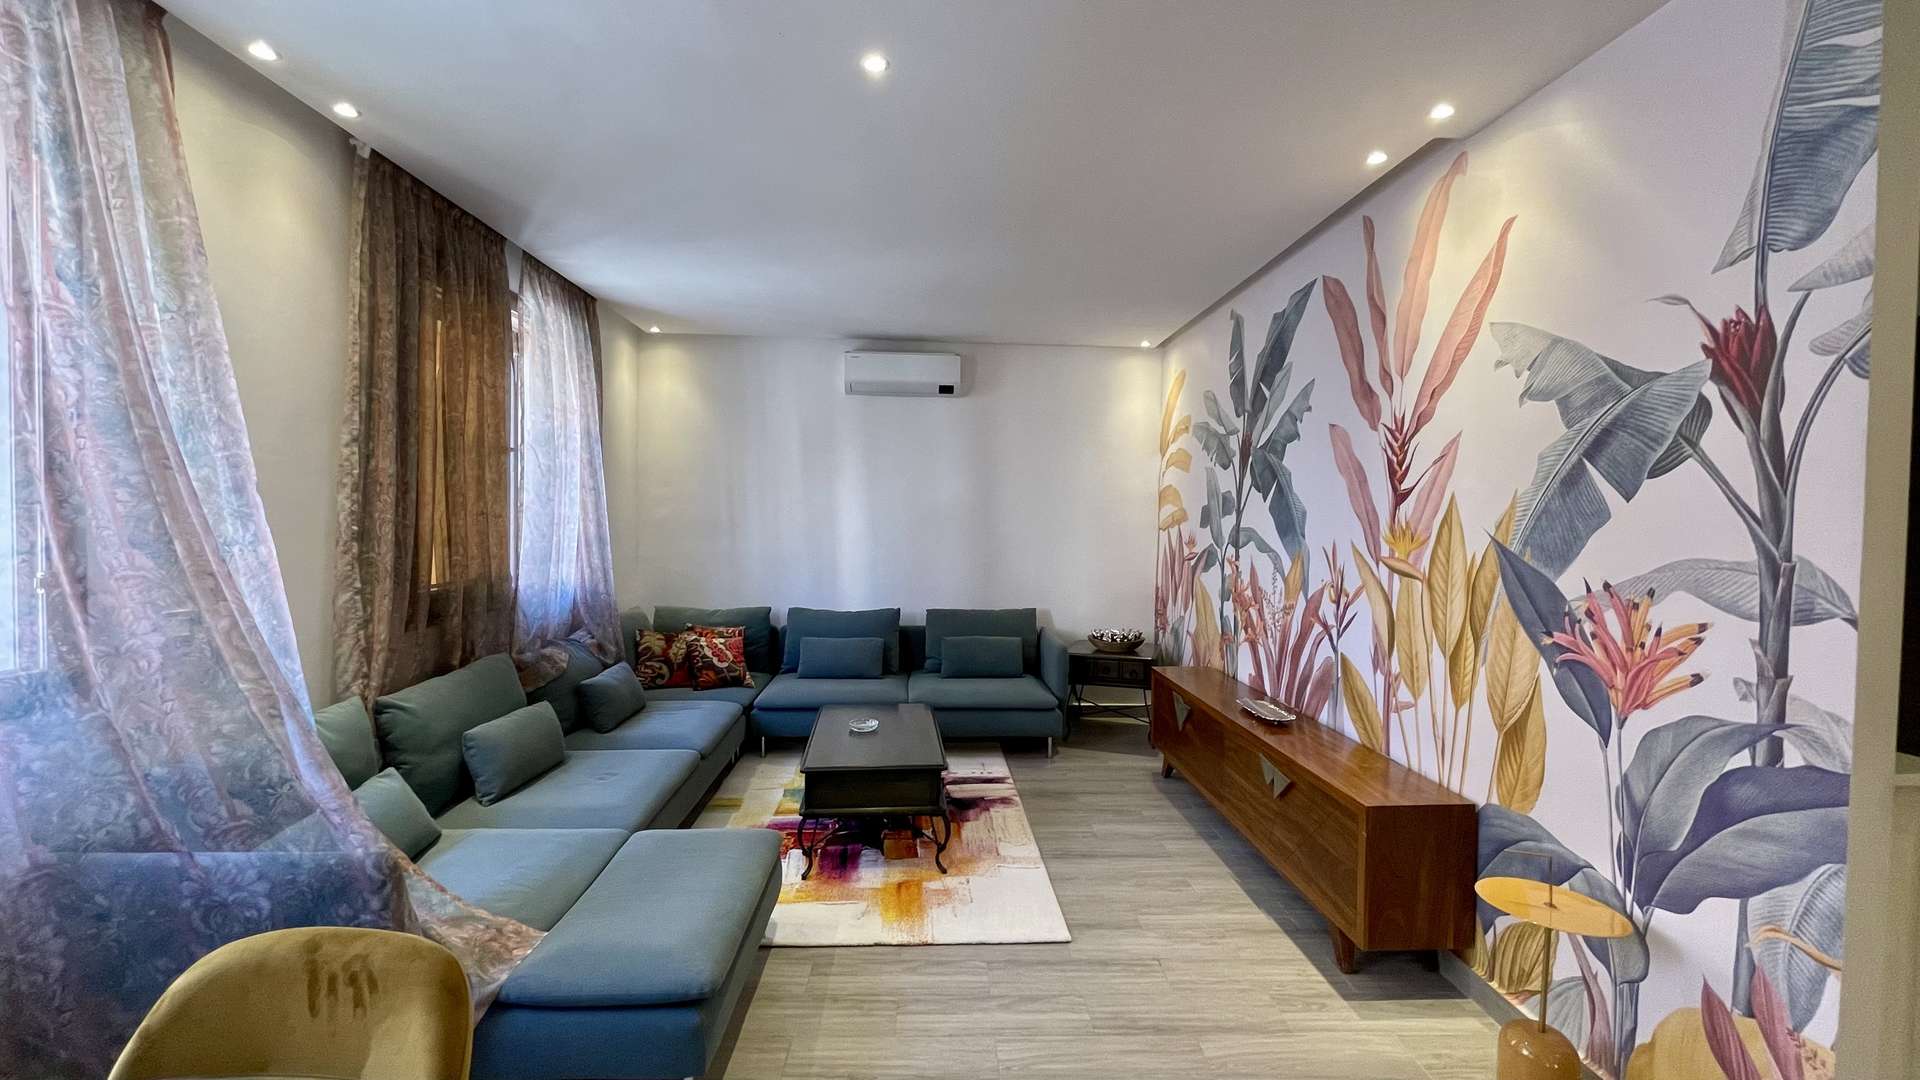 Location longue durée ,Appartement,Appartement Neuf 2 ch salon 100M2 meublé en location longue durée,Marrakech,Targa